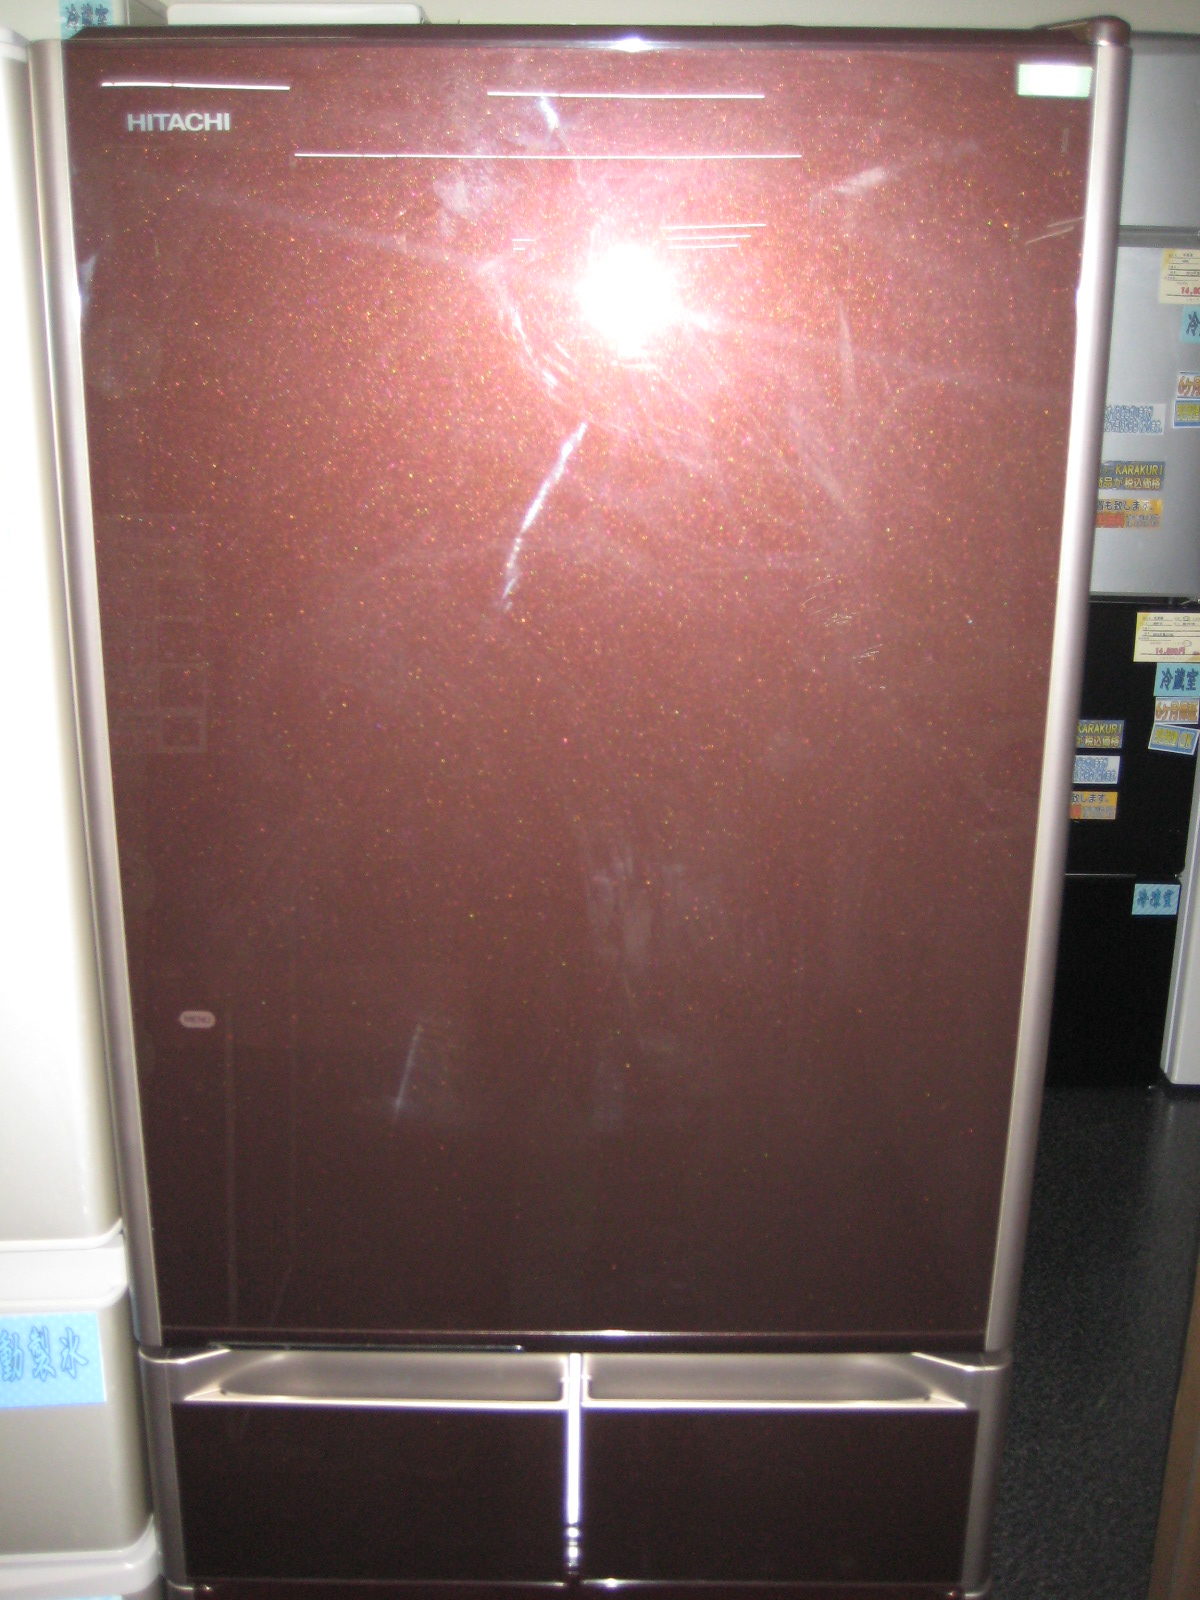 日立HITACHI R-S3800GV(XT) 日立 ノンフロン冷凍冷蔵庫